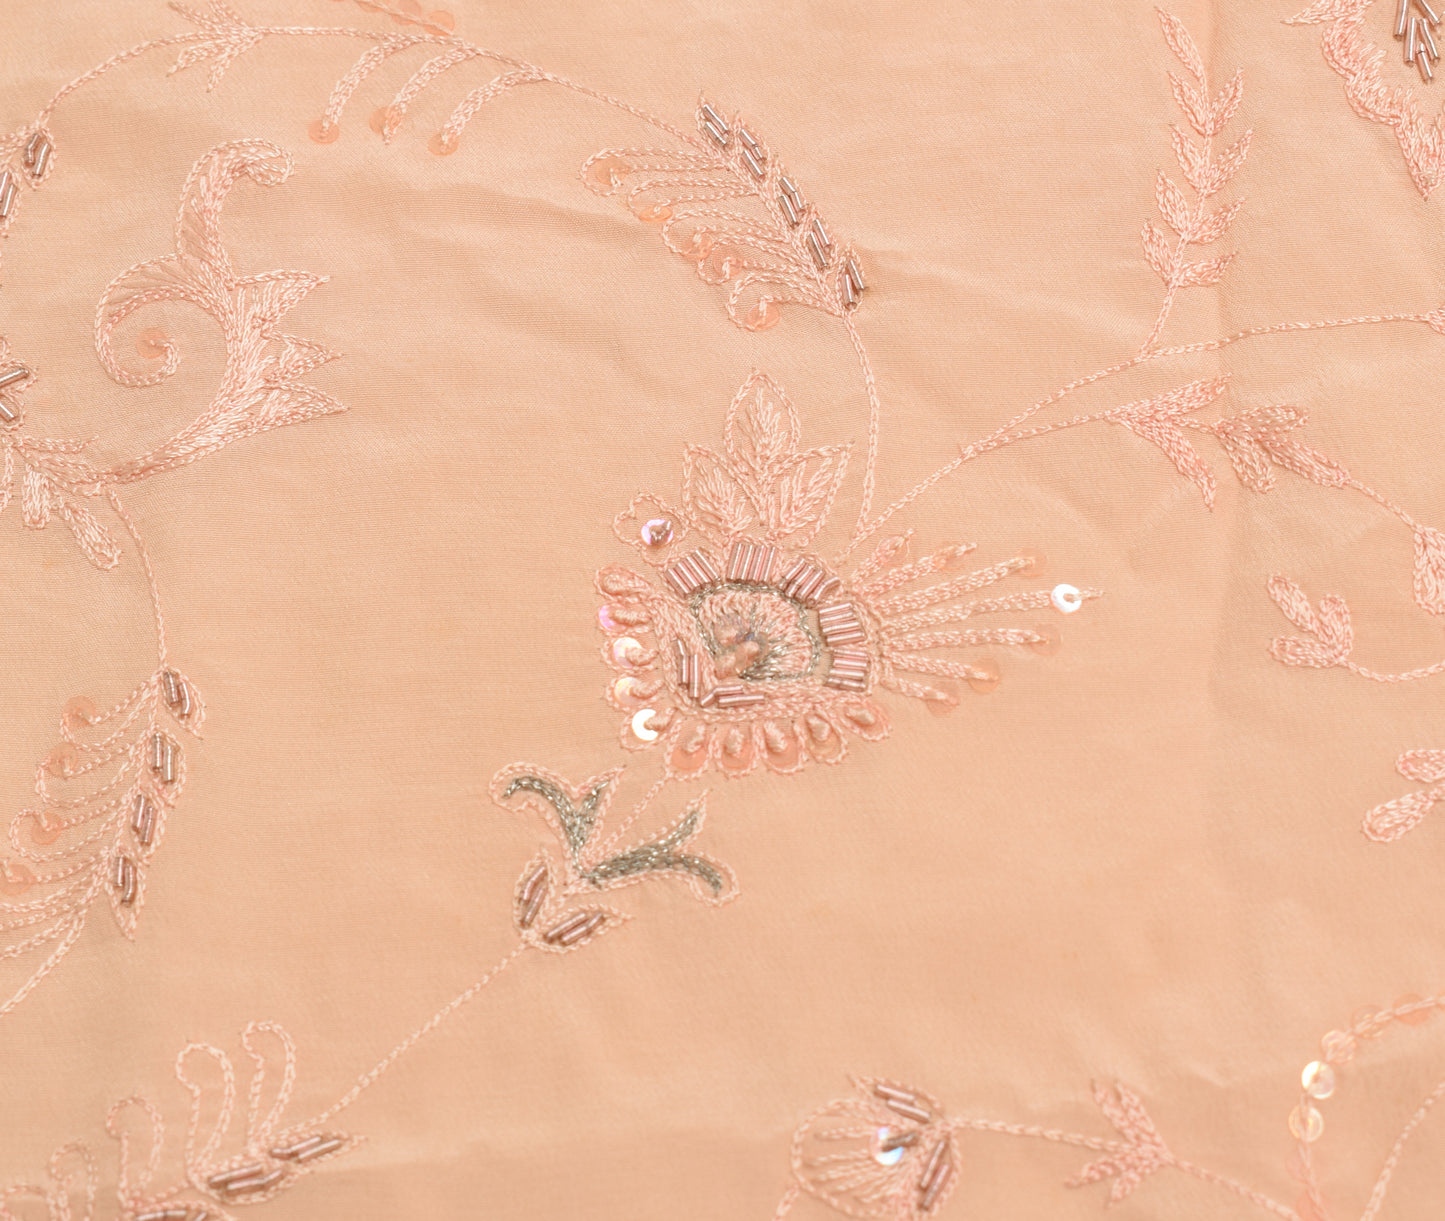 Sushila Vintage Peach Sari Remnant Scrap Multi Purpose Hand Beaded Craft Fabric